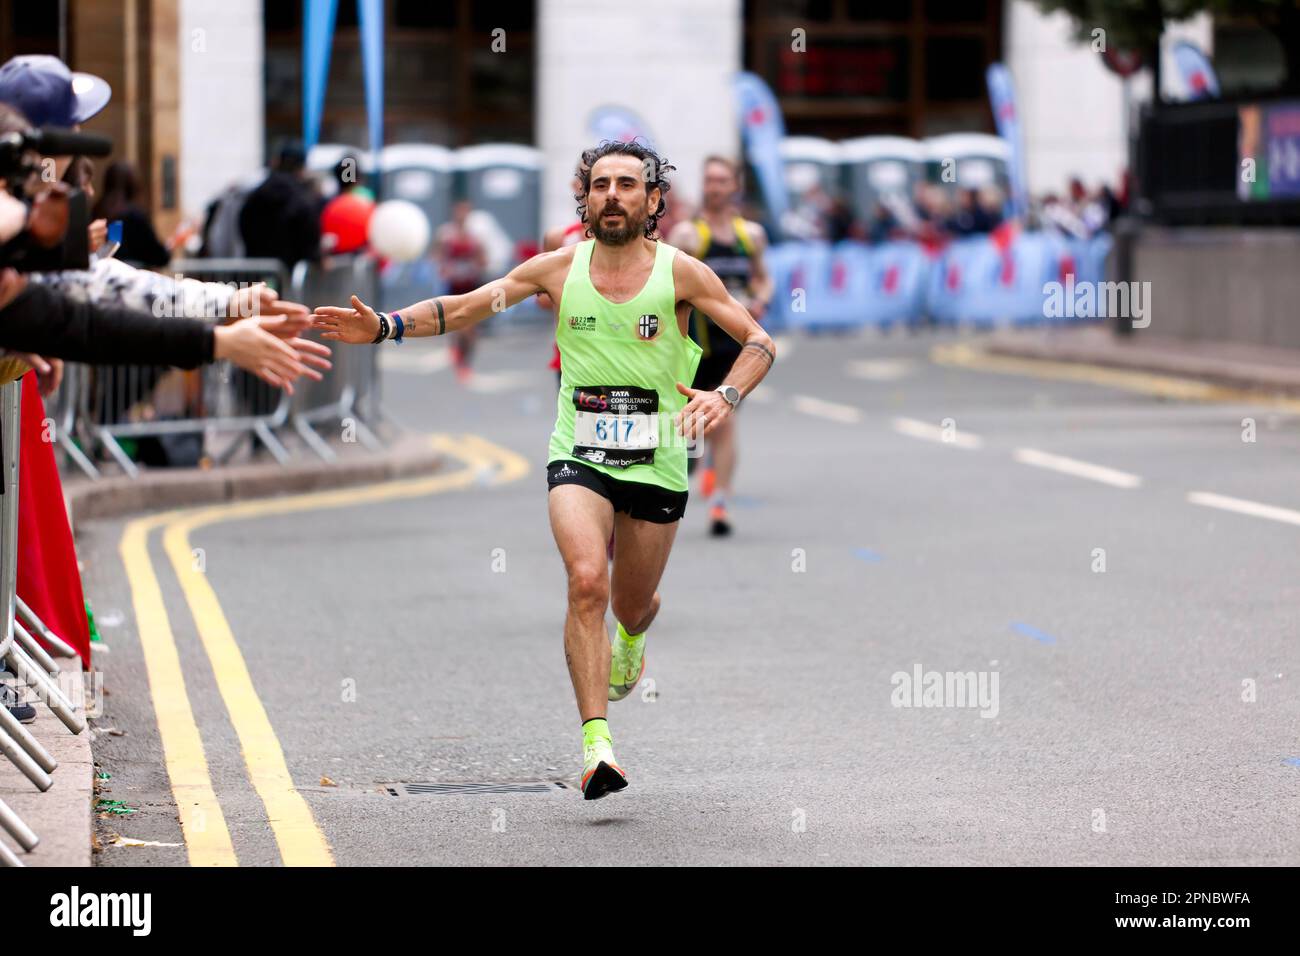 William Talleri, passant par Cabot Square sur son chemin pour terminer 6th dans la catégorie 45-49 du Marathon de Londres 2022 en 02:31:45 Banque D'Images